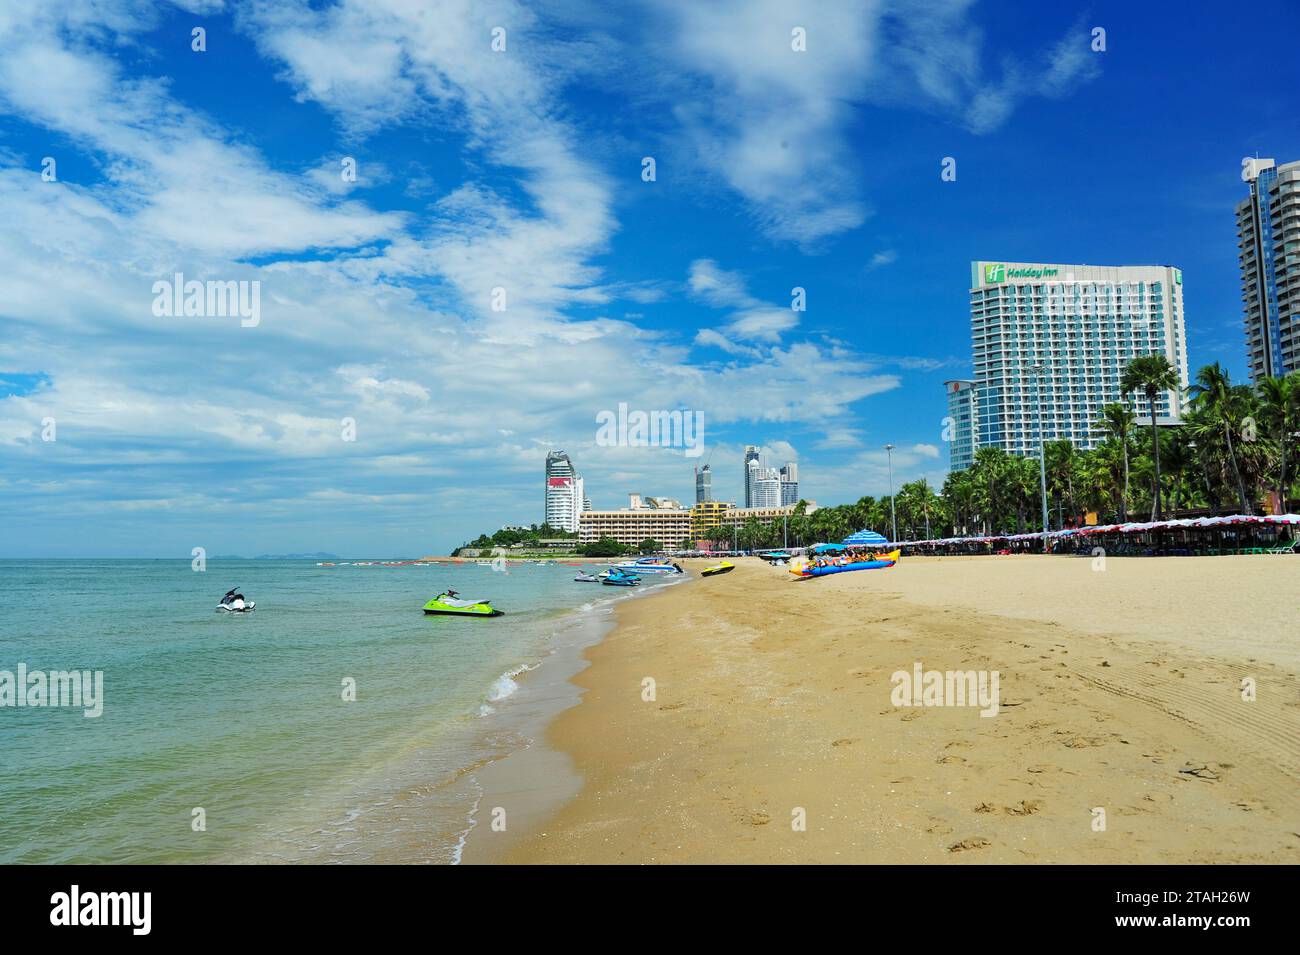 La spiaggia di Pattaya è lunga circa 3 chilometri. C'è una strada ombreggiata lungo la spiaggia. La spiaggia nord è un luogo tranquillo dove i turisti amano nuotare e rilassarsi. E' un centro di attivita' marine per coloro che vengono a riposarsi, come prendere il sole e sport acquatici. Il tratto lungo la spiaggia è pieno di hotel, ristoranti, negozi di souvenir e molto altro. Pataya, Thailandia. Foto Stock